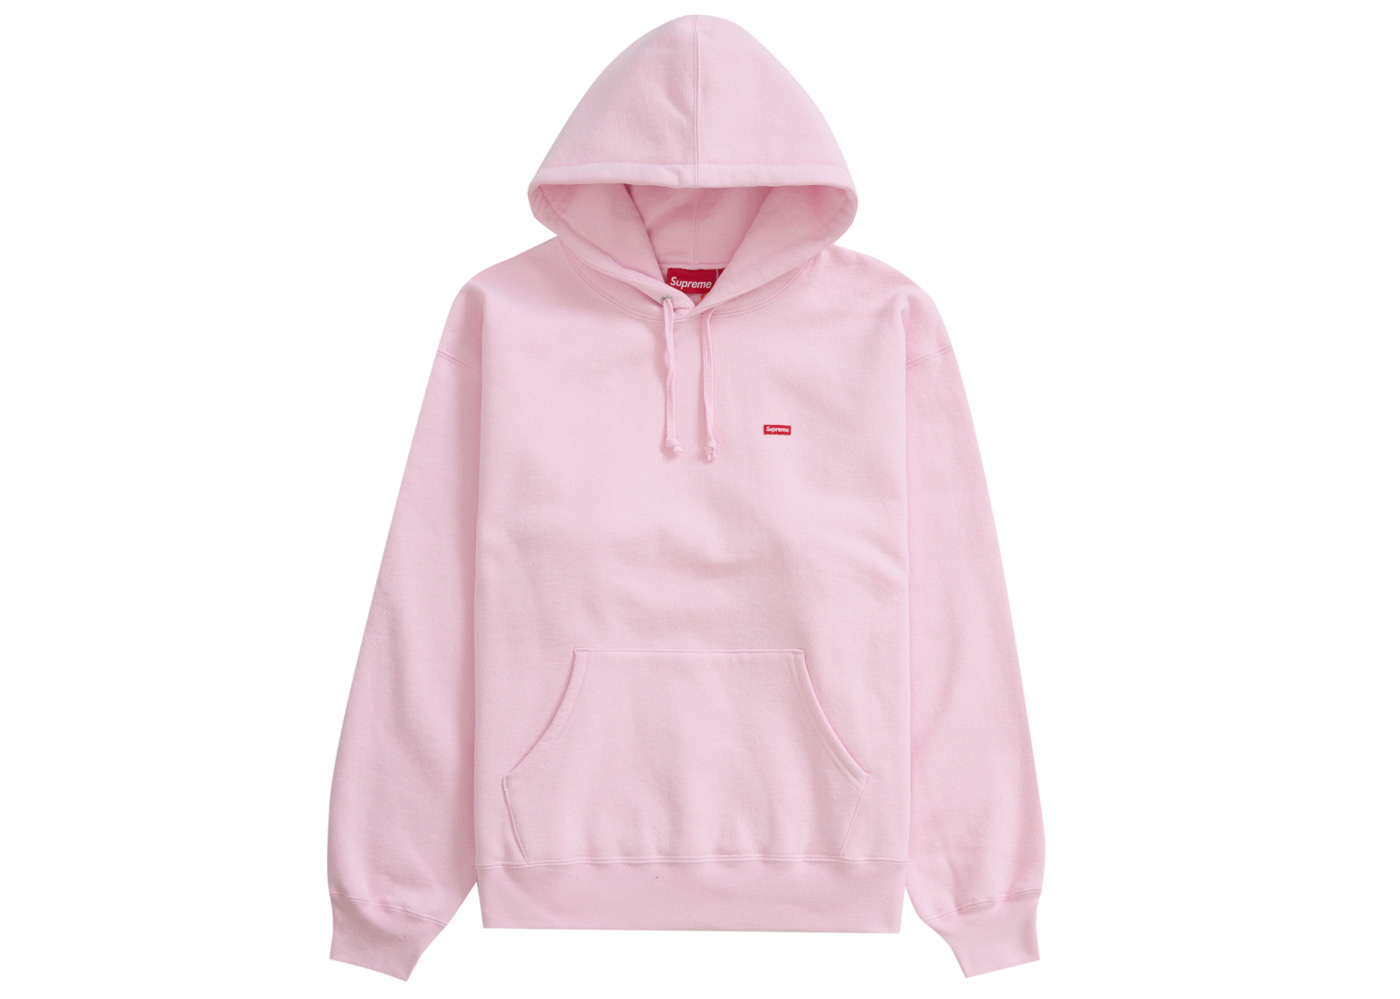 17,640円Supreme Small Box Hooded Light Pink